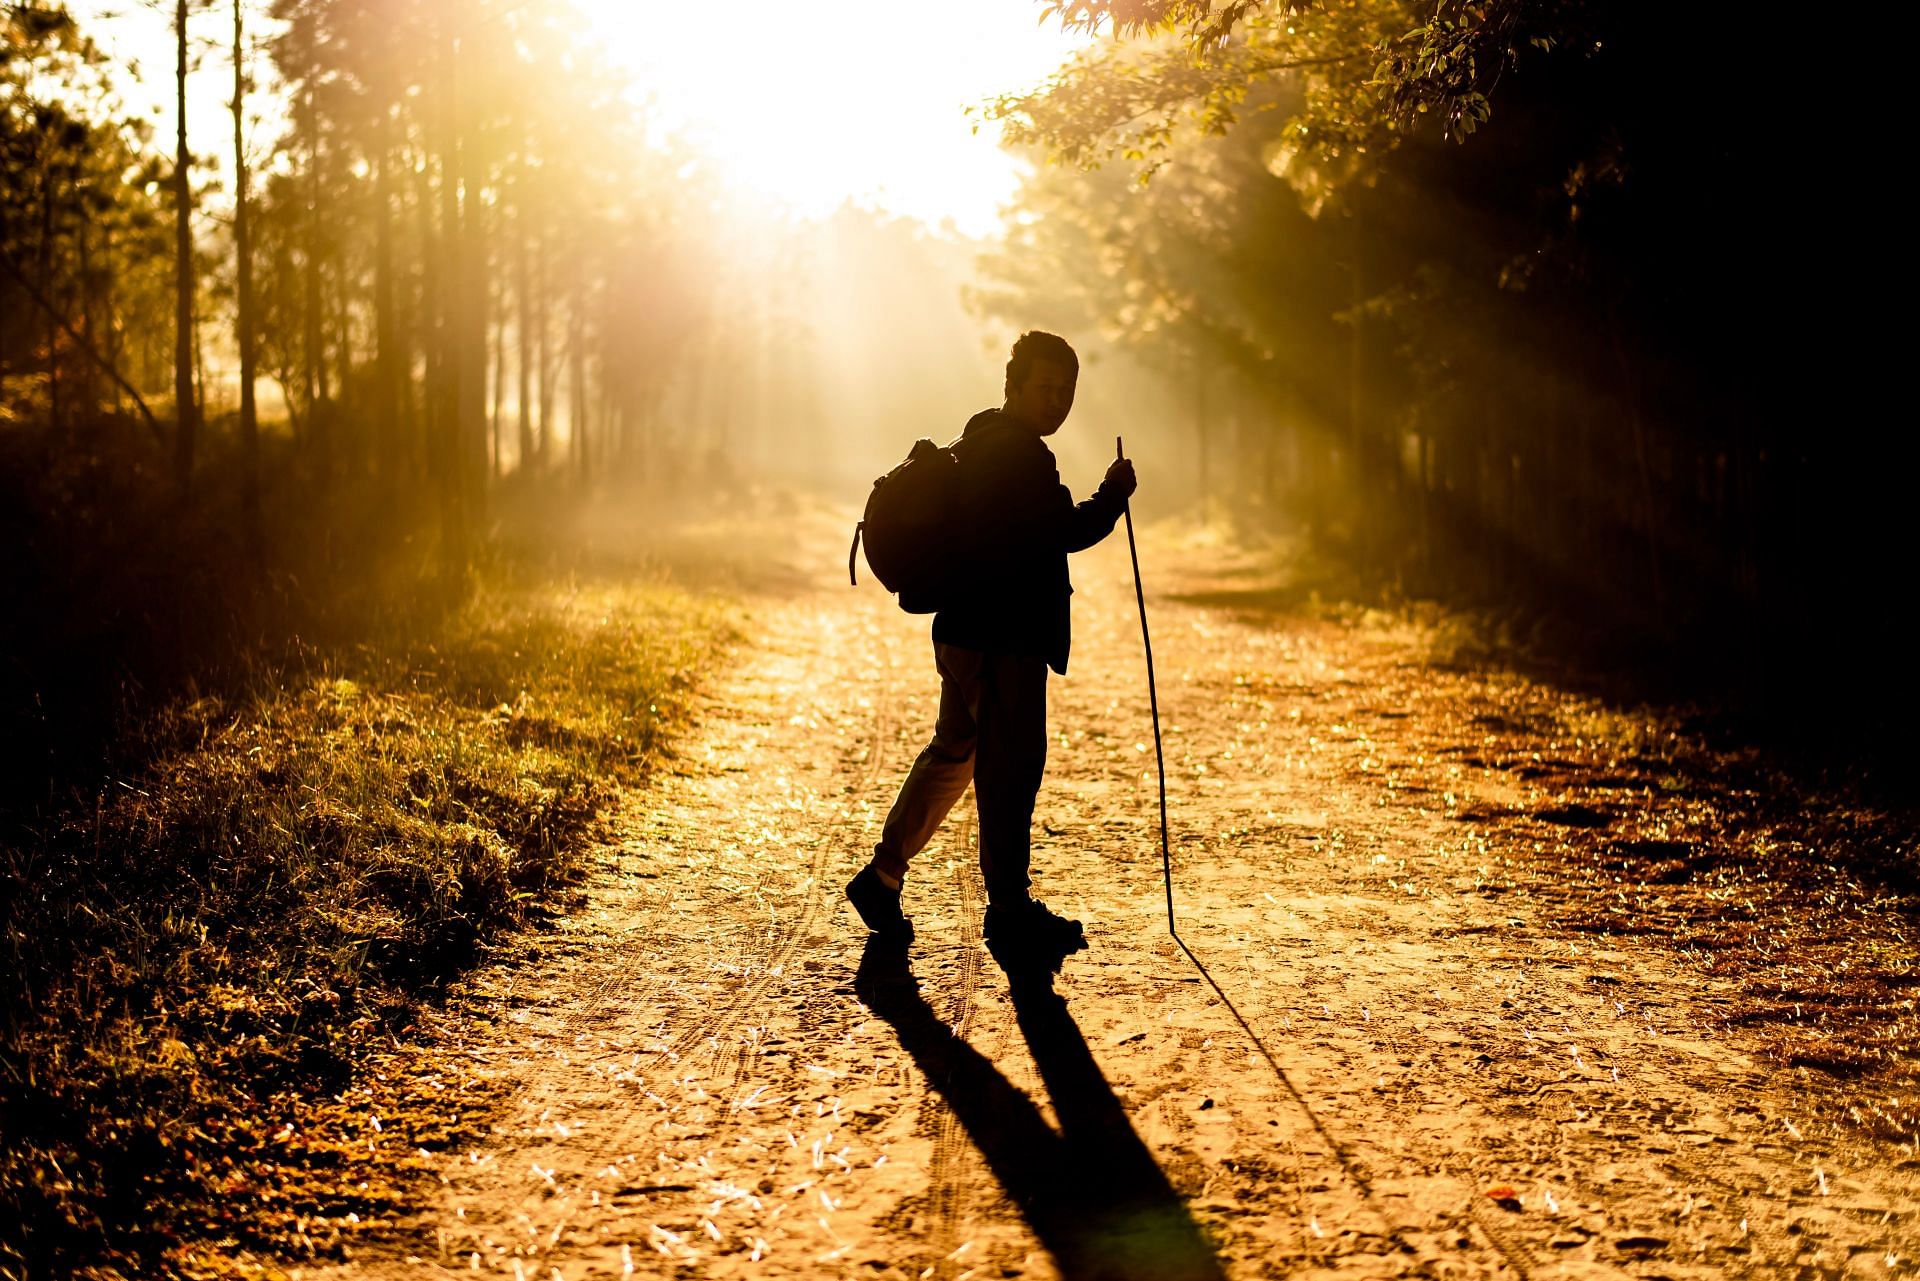 Nordic walking is an intense, but rewarding walking exercise (Image via unsplash/Mr. Autthaporn Pradipong)